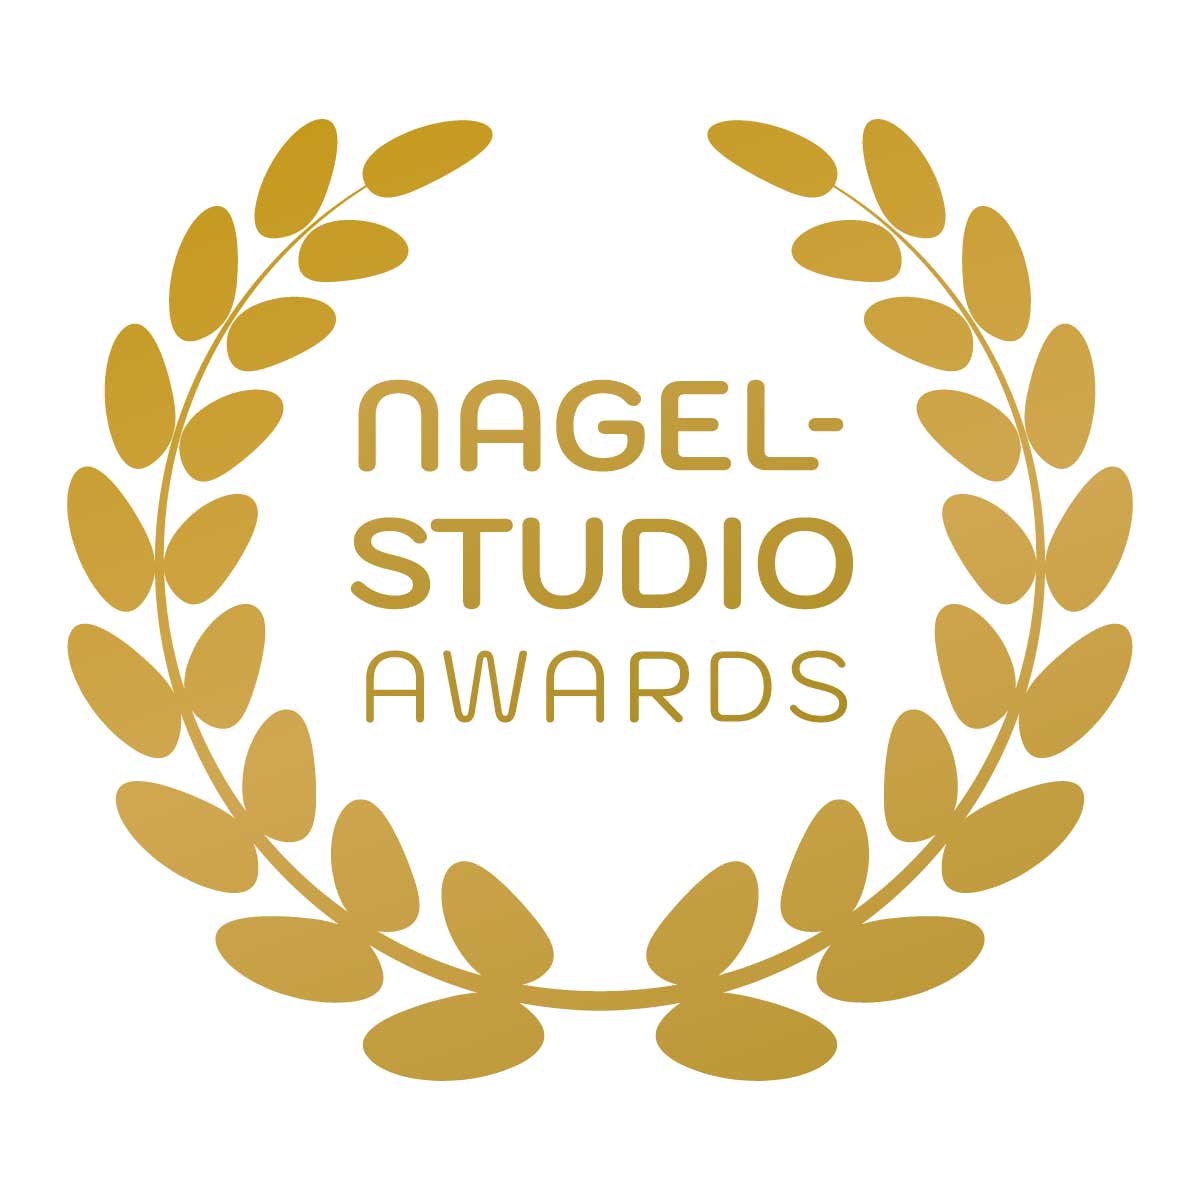 NagelStudio Awards - Gold